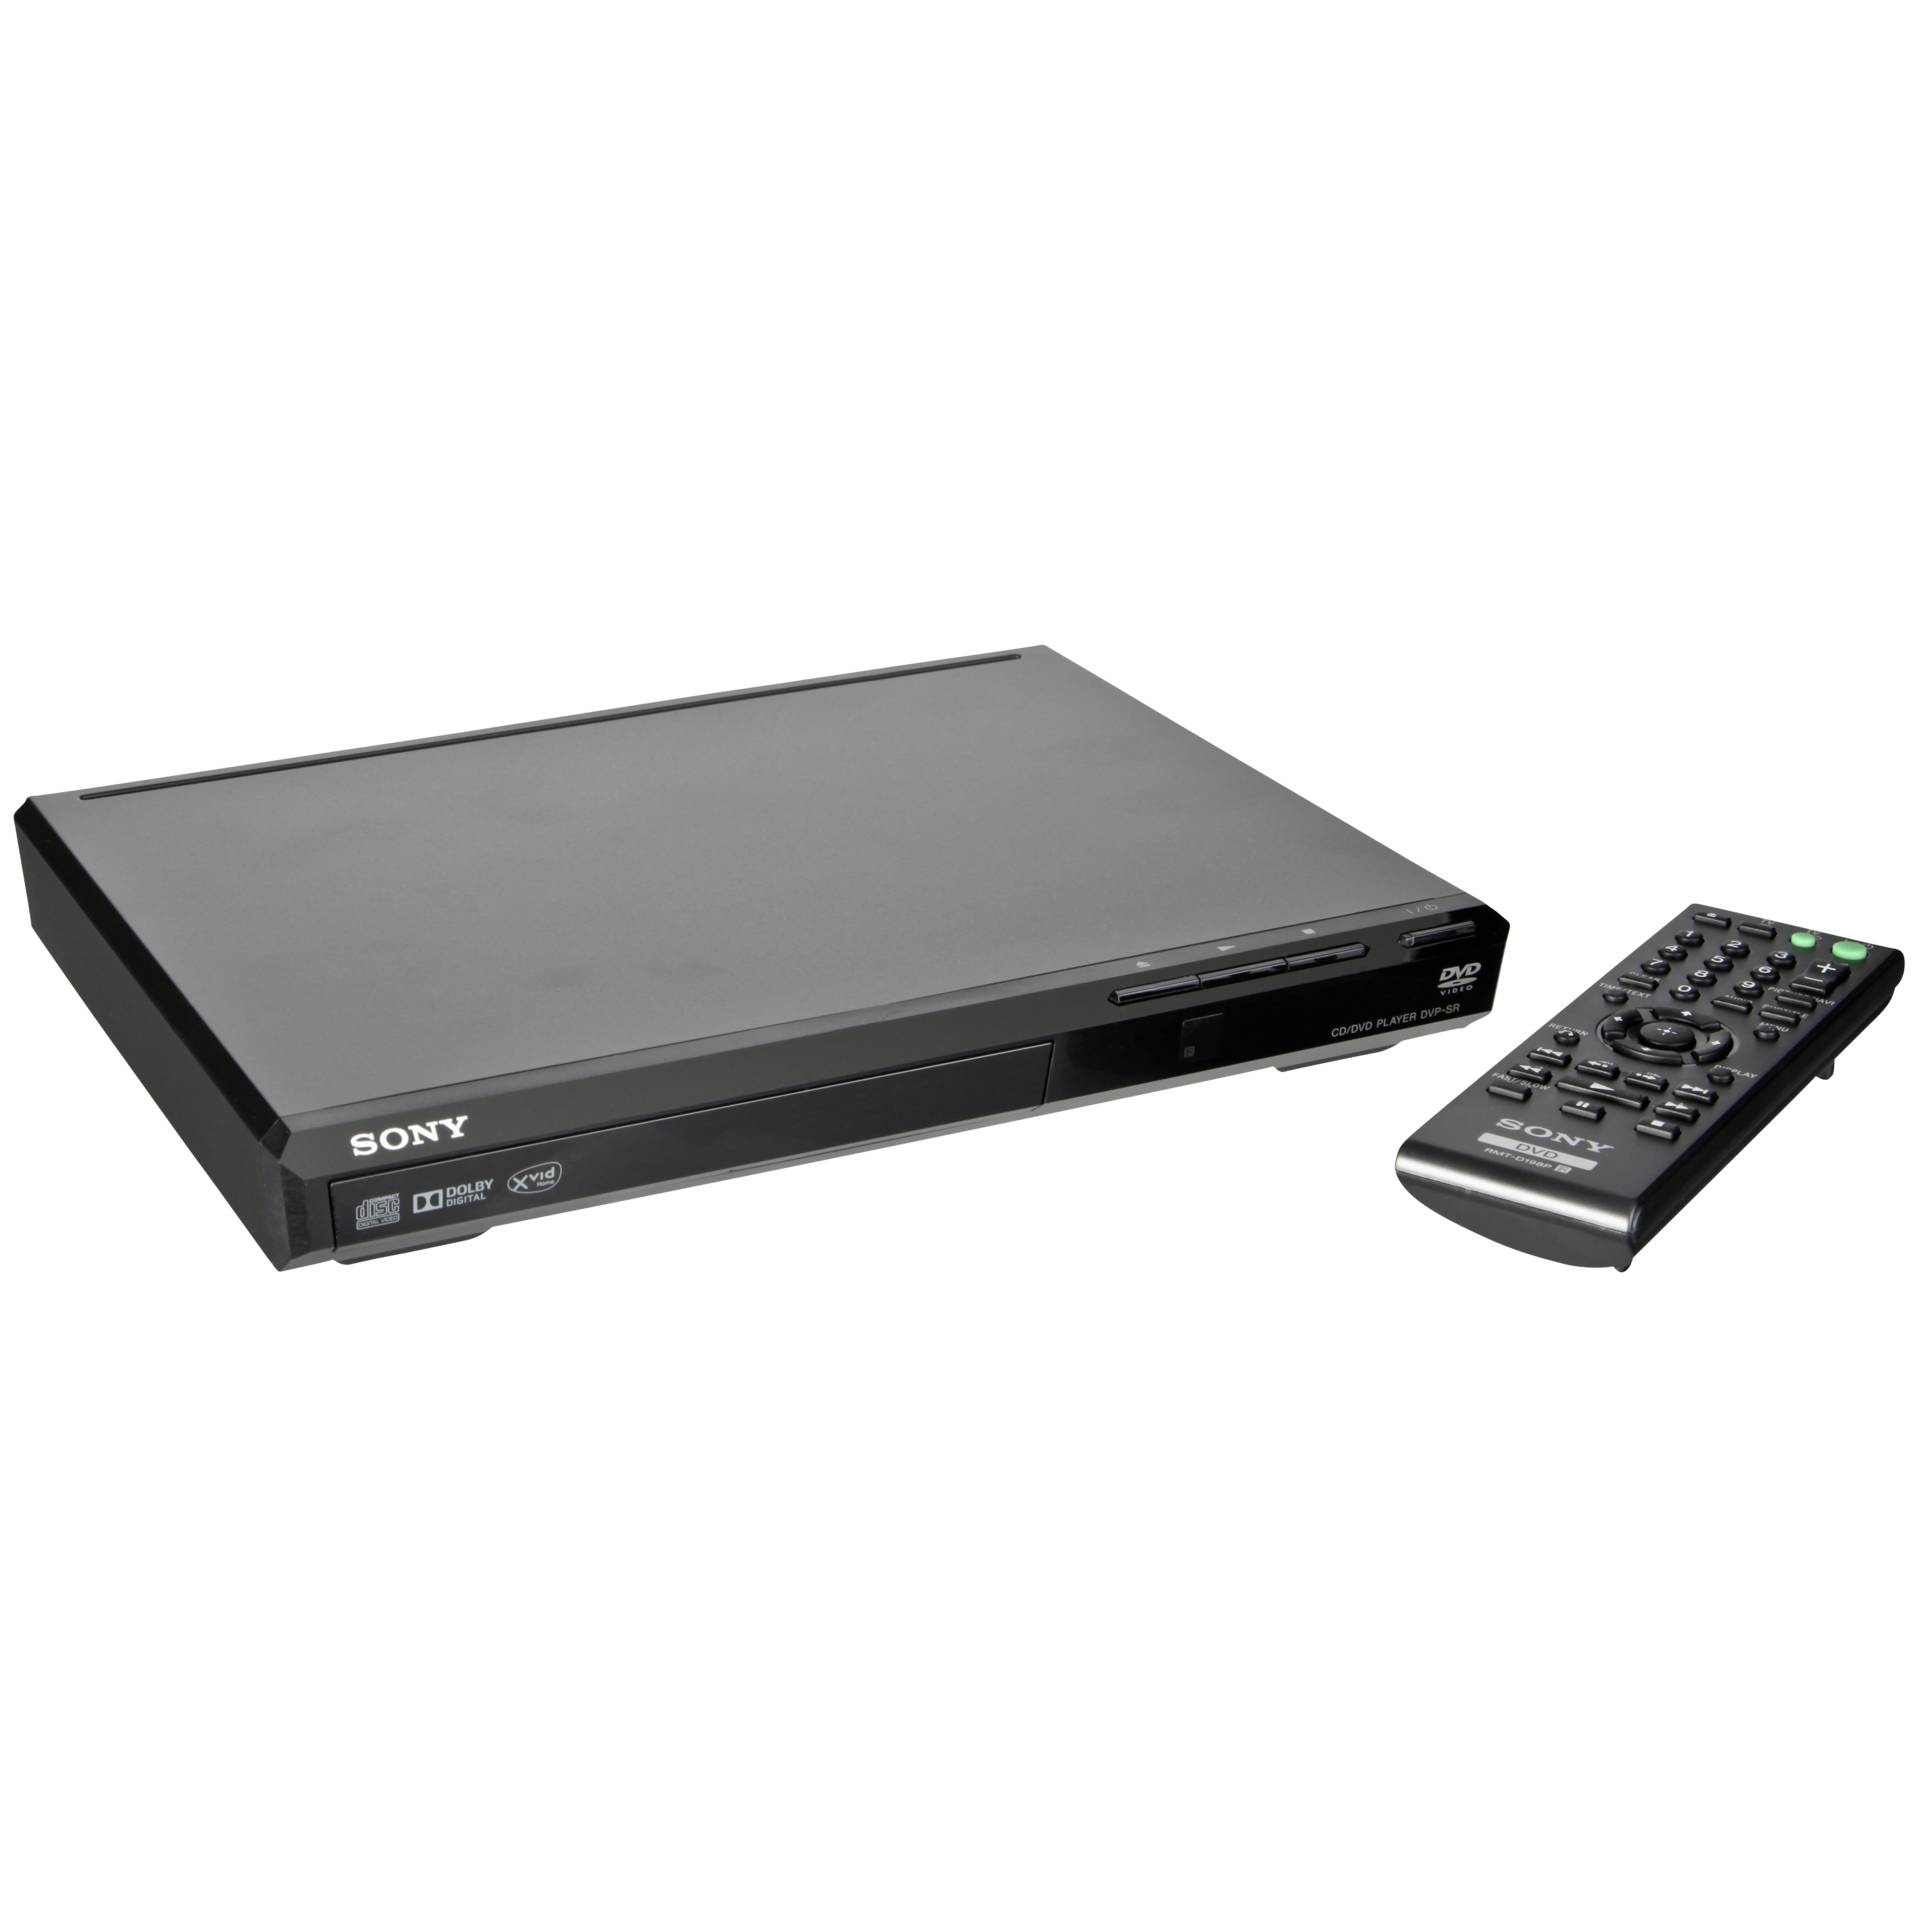 Sony DVP-SR370 schwarz, DVD-Player 